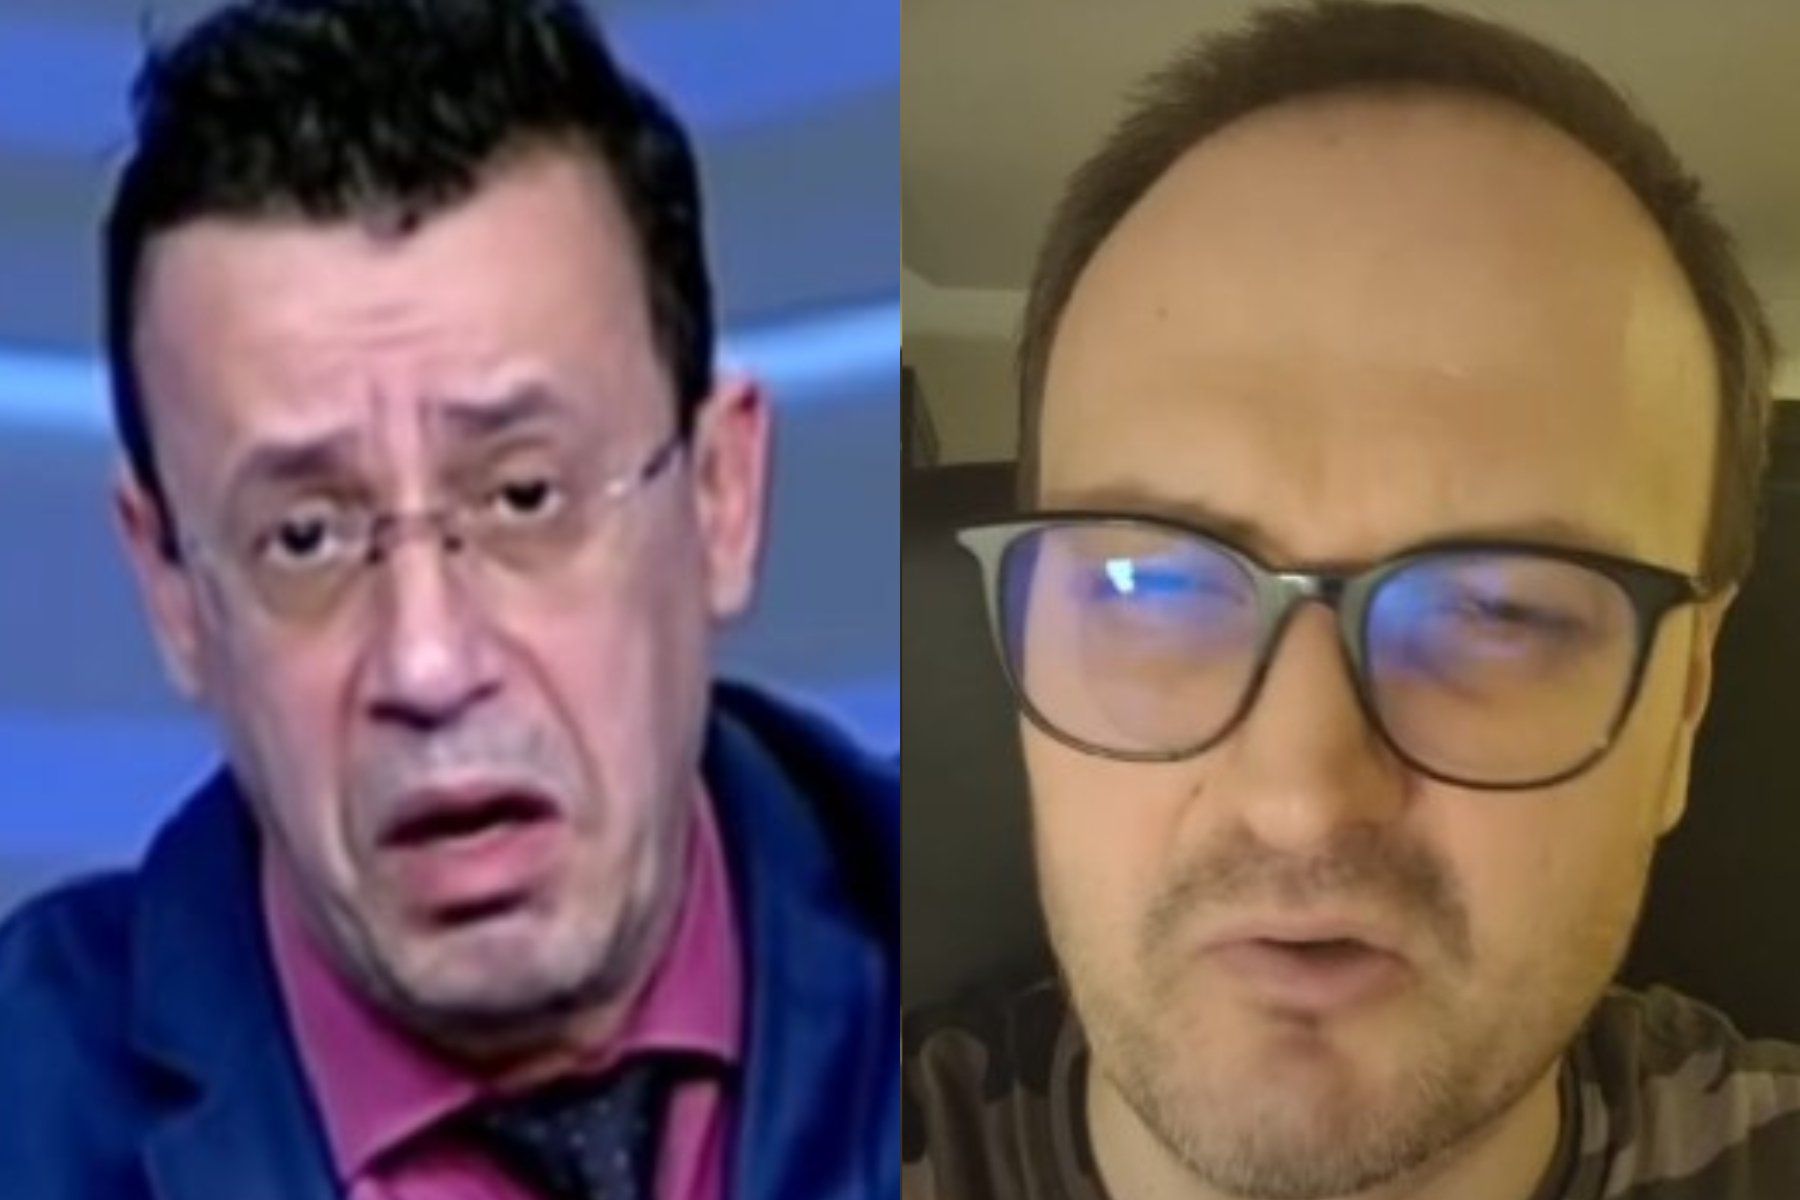  VIDEO Circ în direct la TV: Ciutacu şi Cumpănaşu se acuză reciproc că au primit şpăgi şi că îşi înşală soţiile